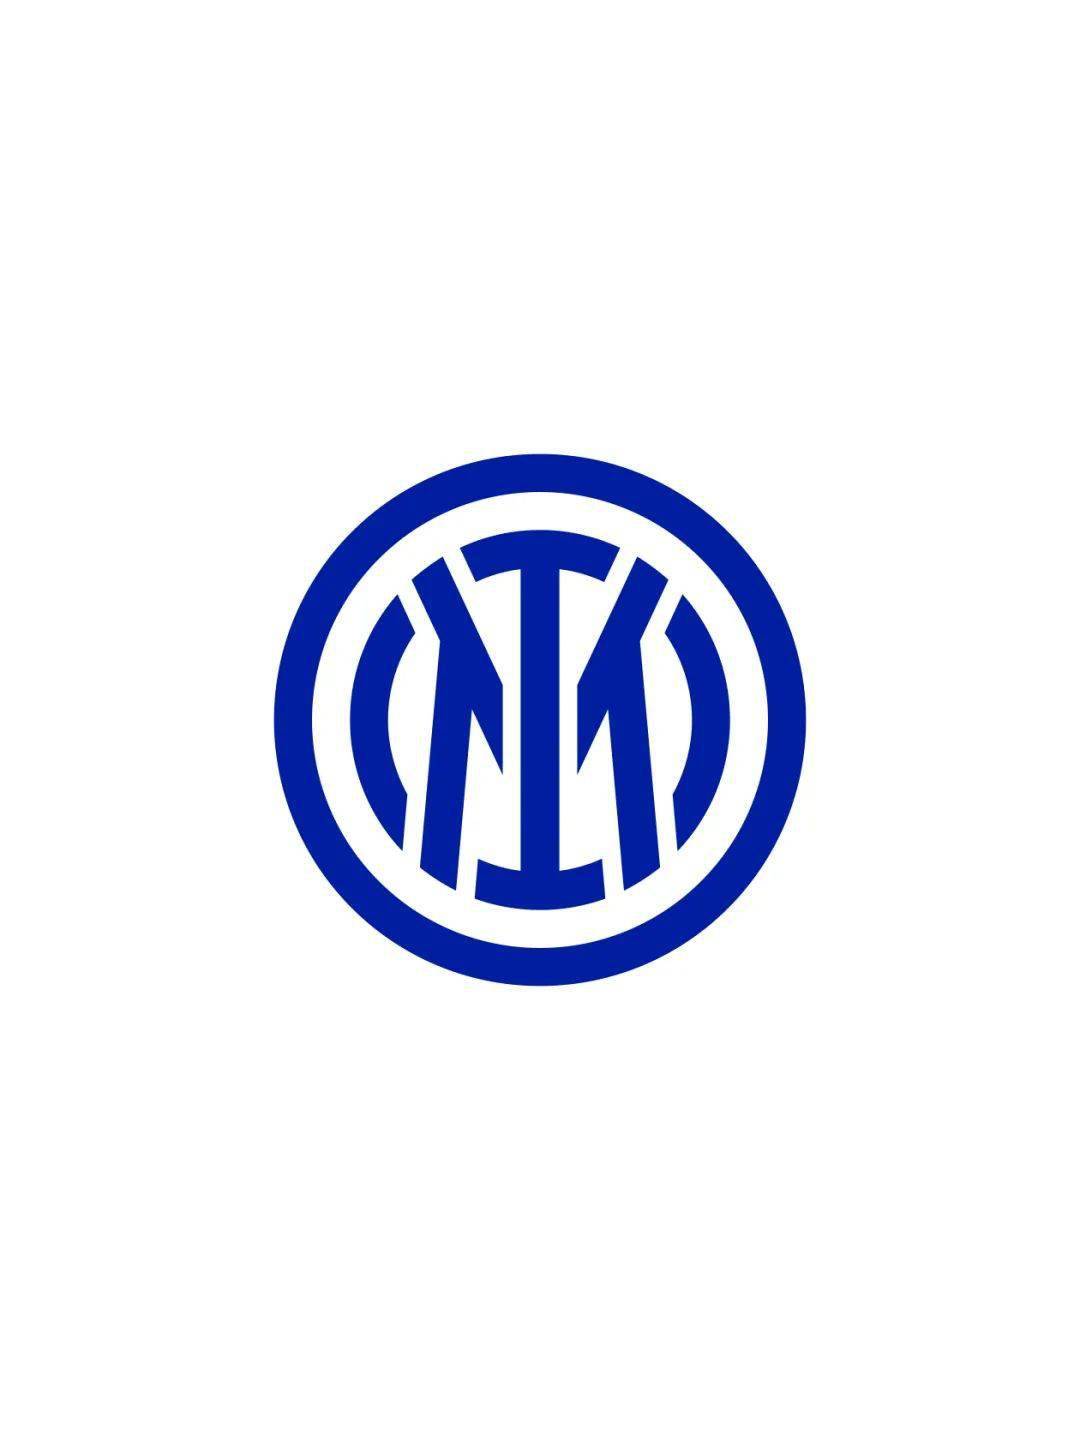 国际米兰足球俱乐部公布全新品牌形象